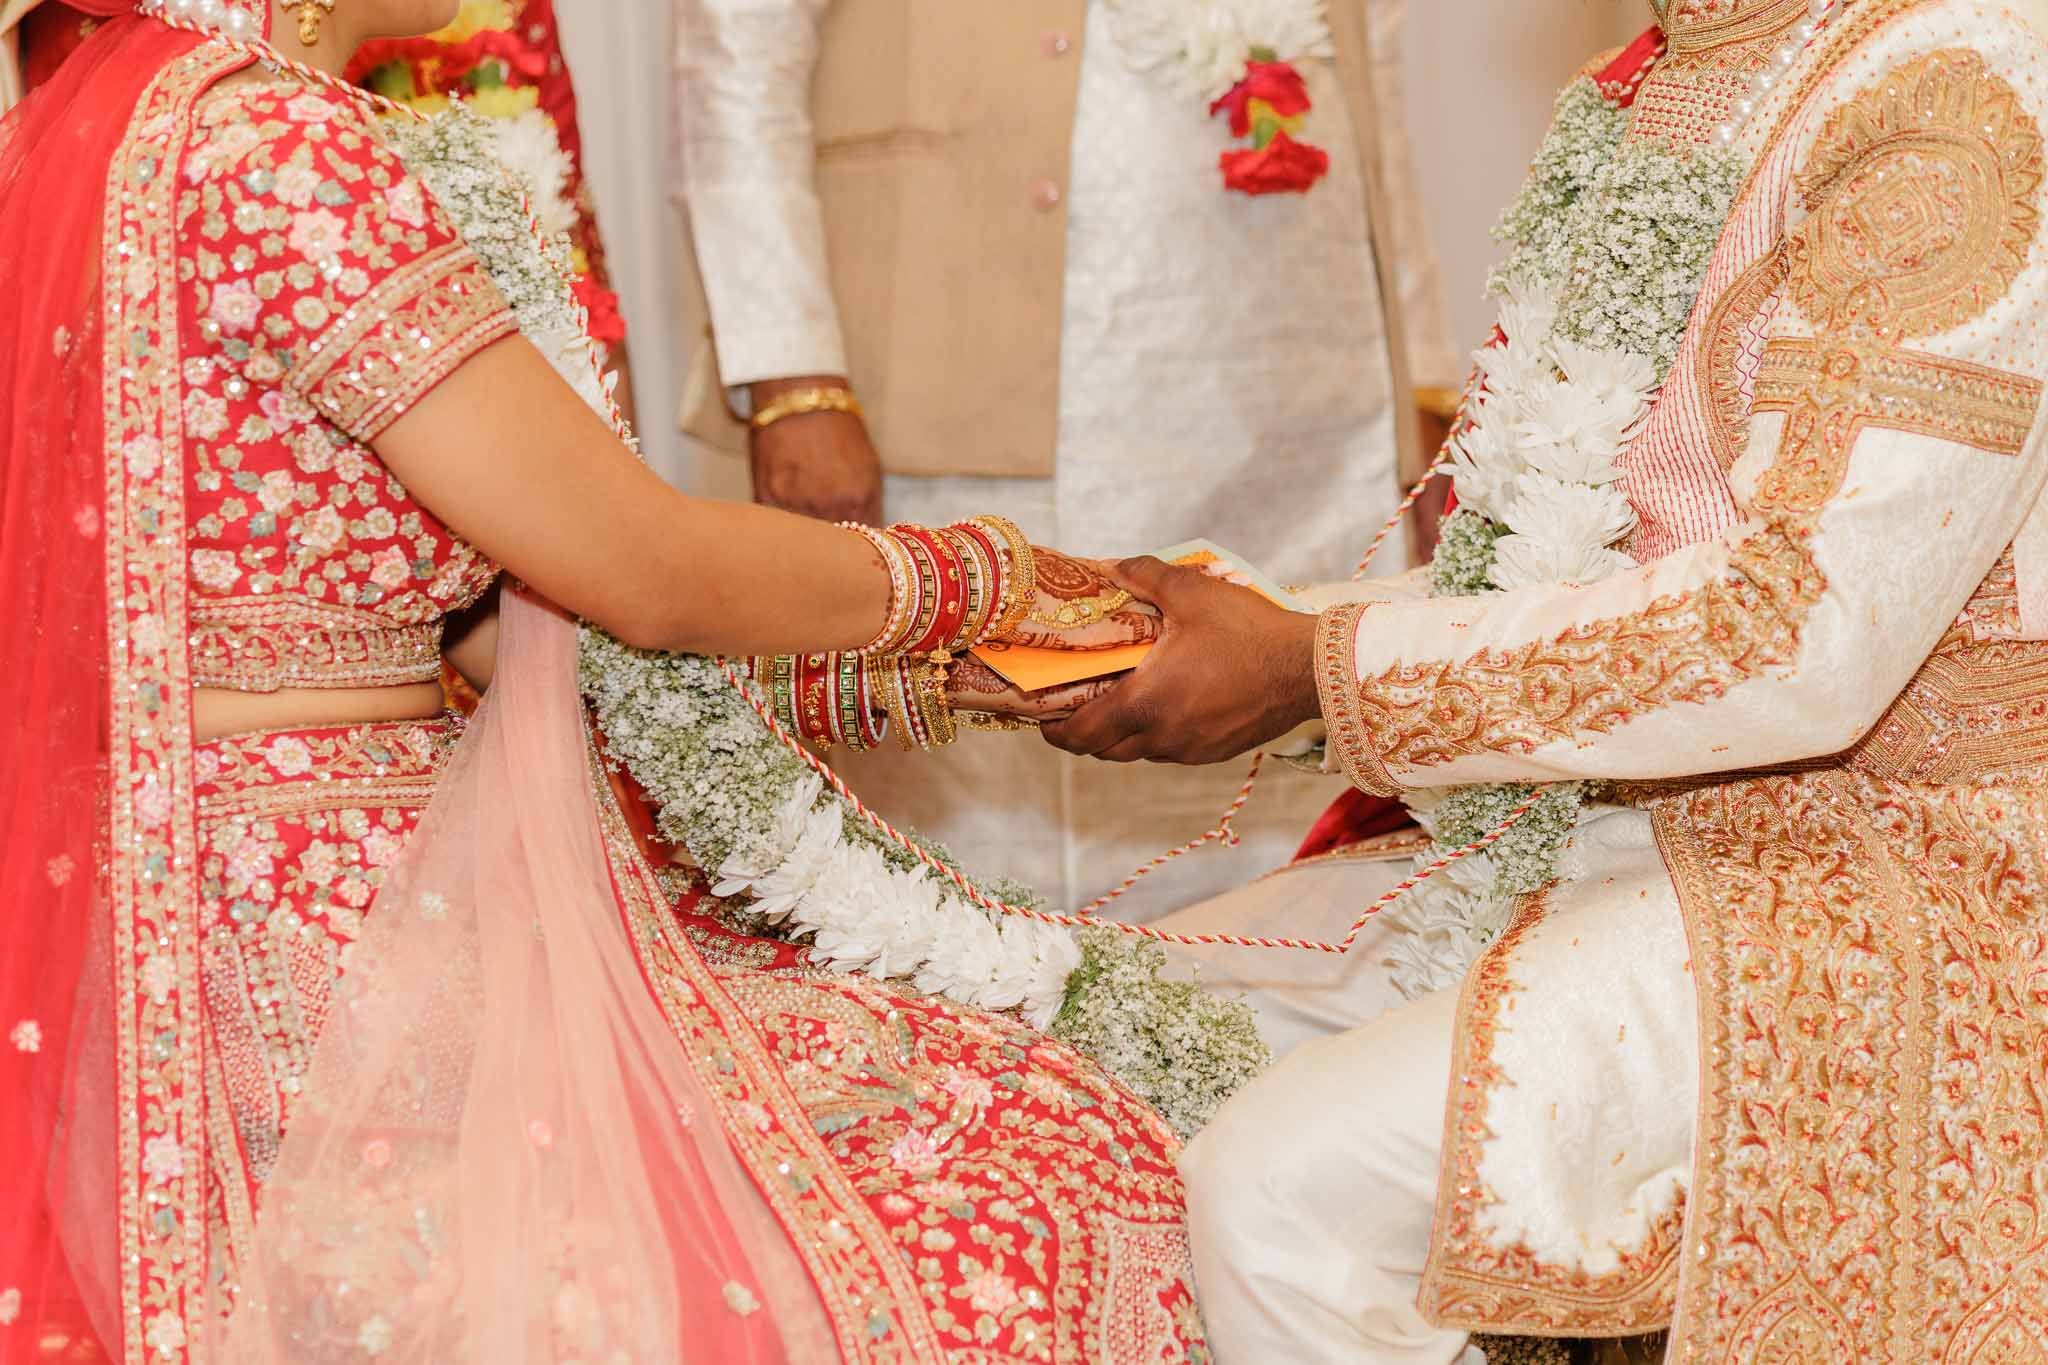 Indian wedding puja closeup image